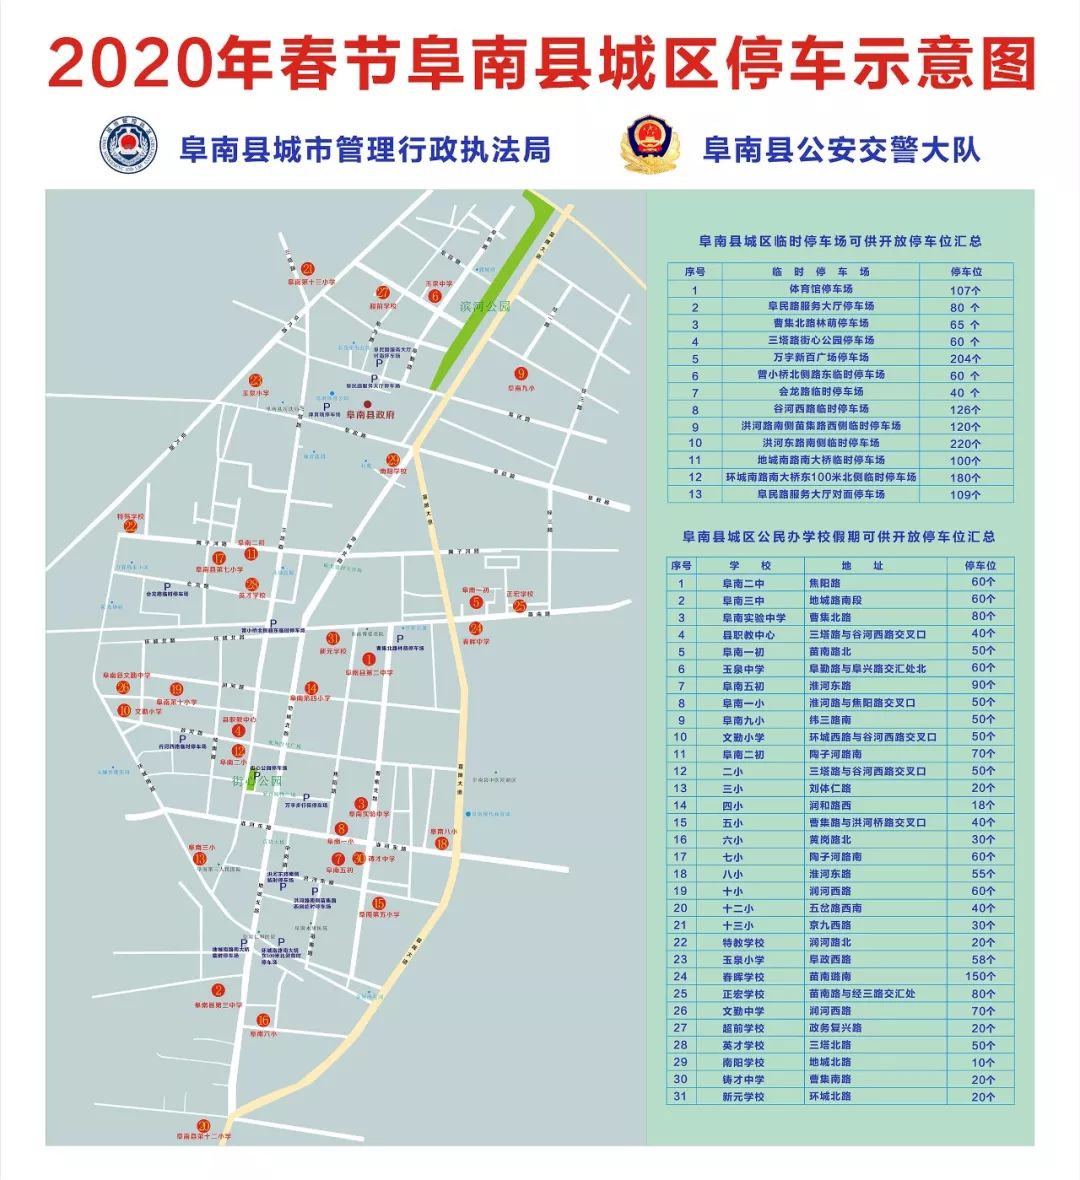 阜南县城区春节免费开放44处停车场3032个停车位!